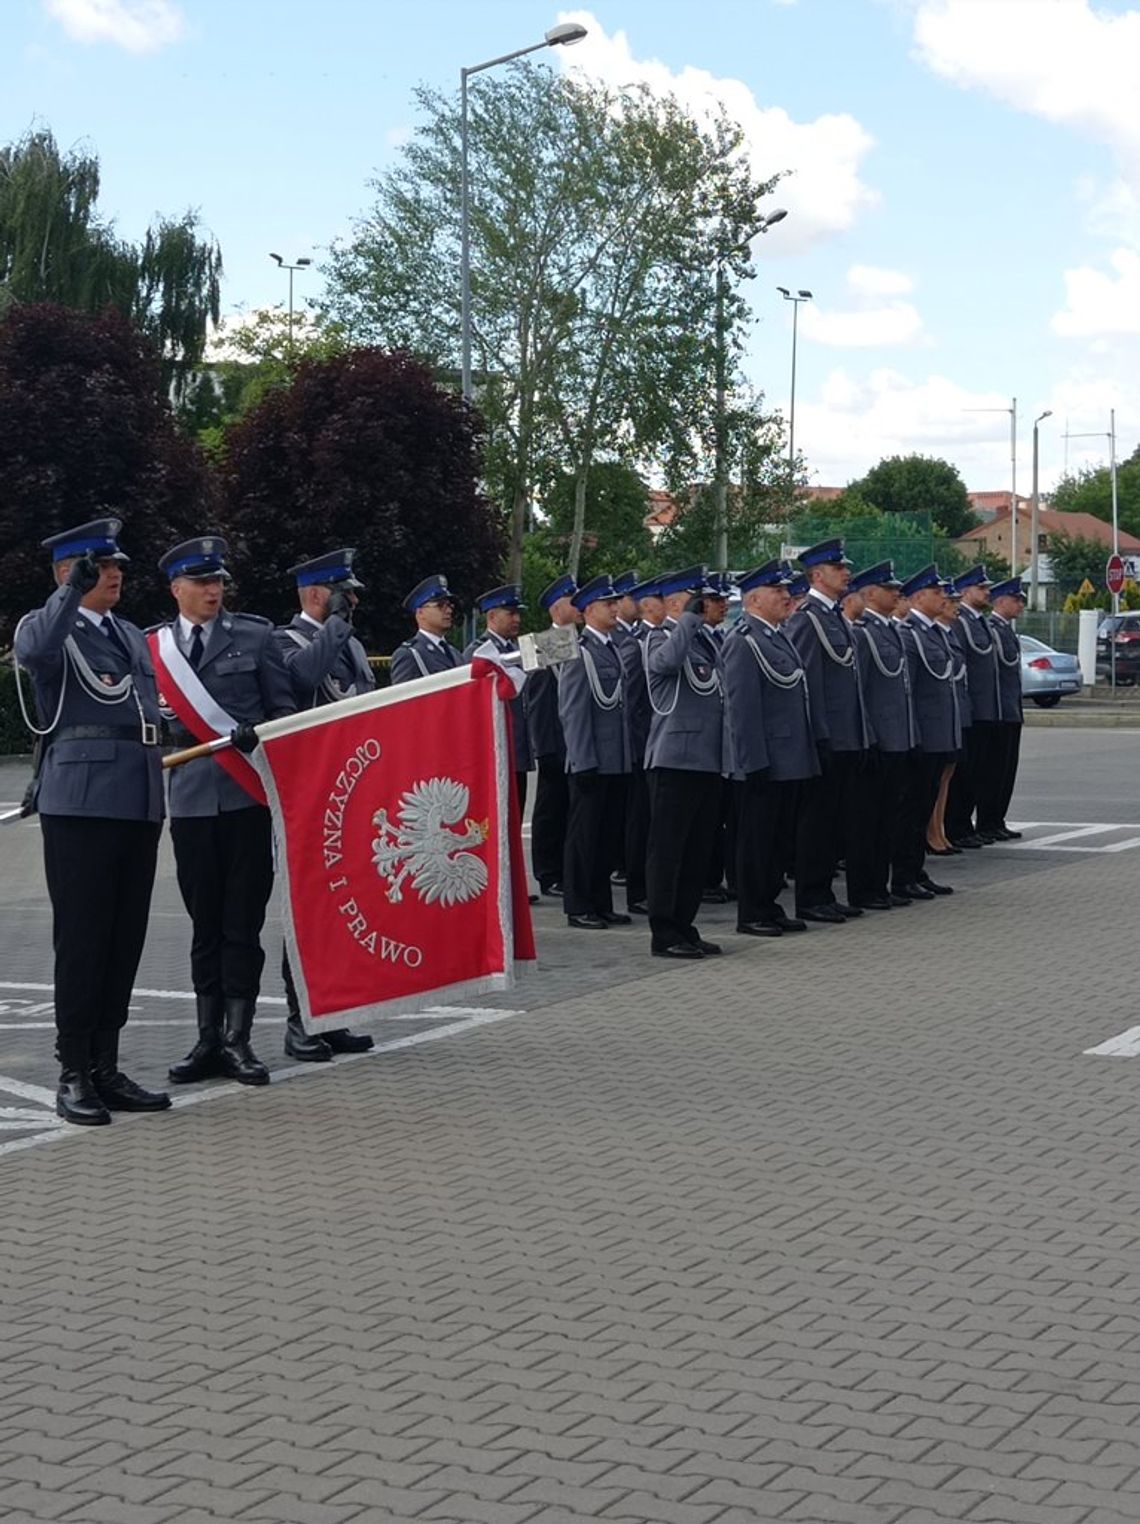 Tak Komenda Miejska Policji w Białej Podlaskiej obchodziła Święto Policji